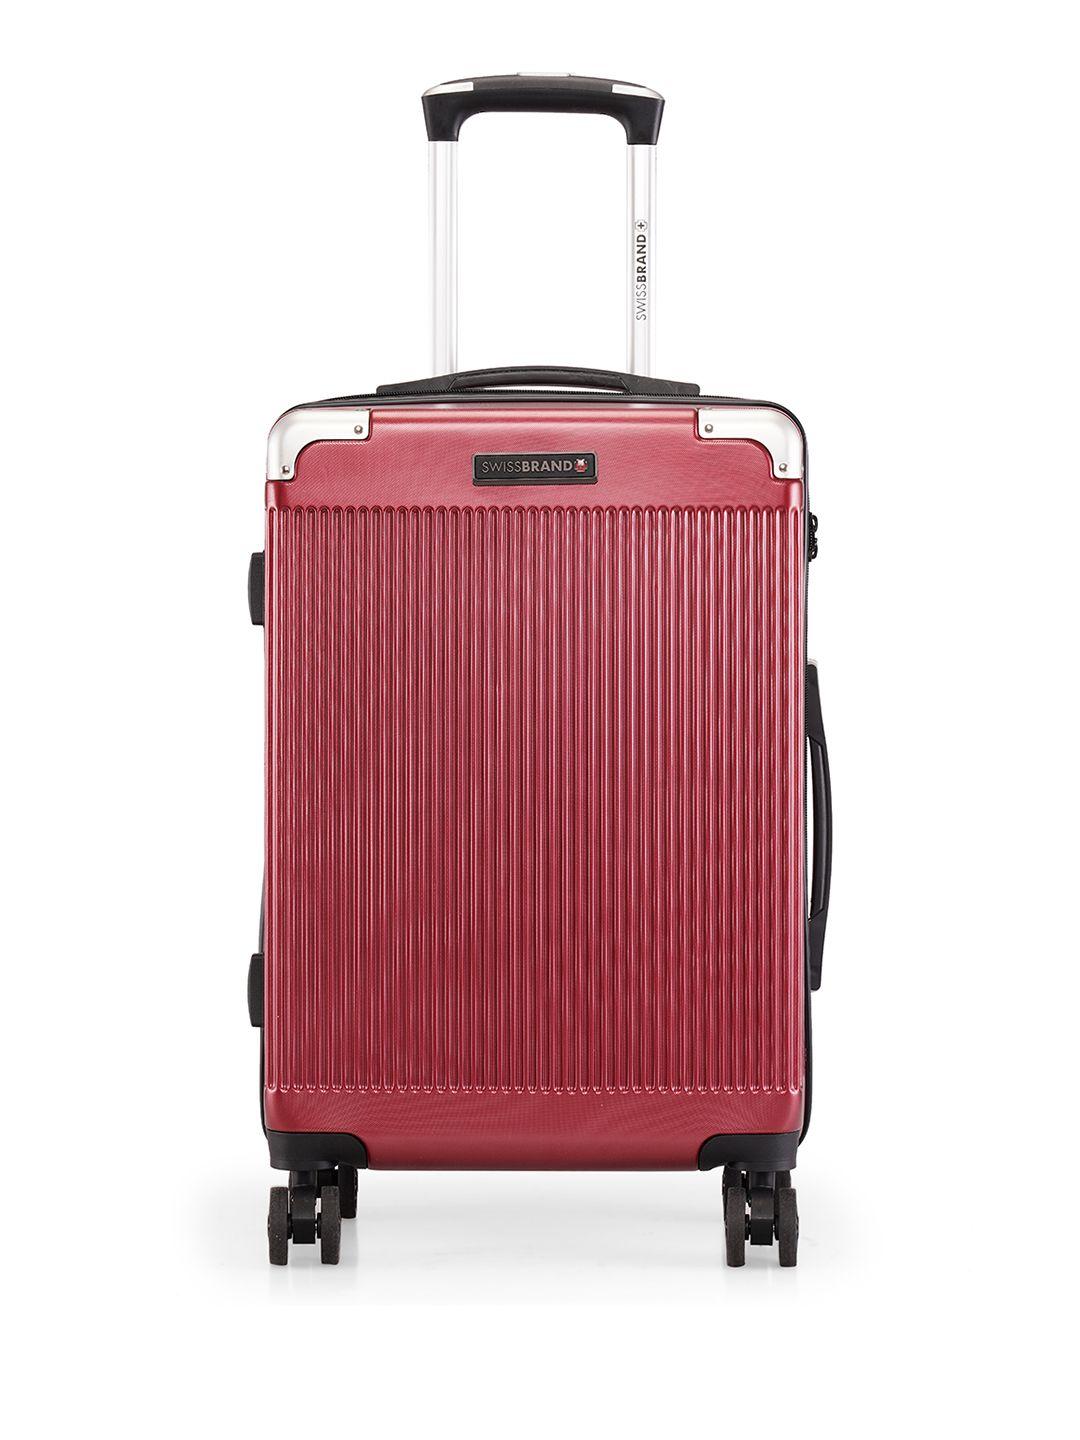 swiss brand maroon case cabin size trolley suitcase